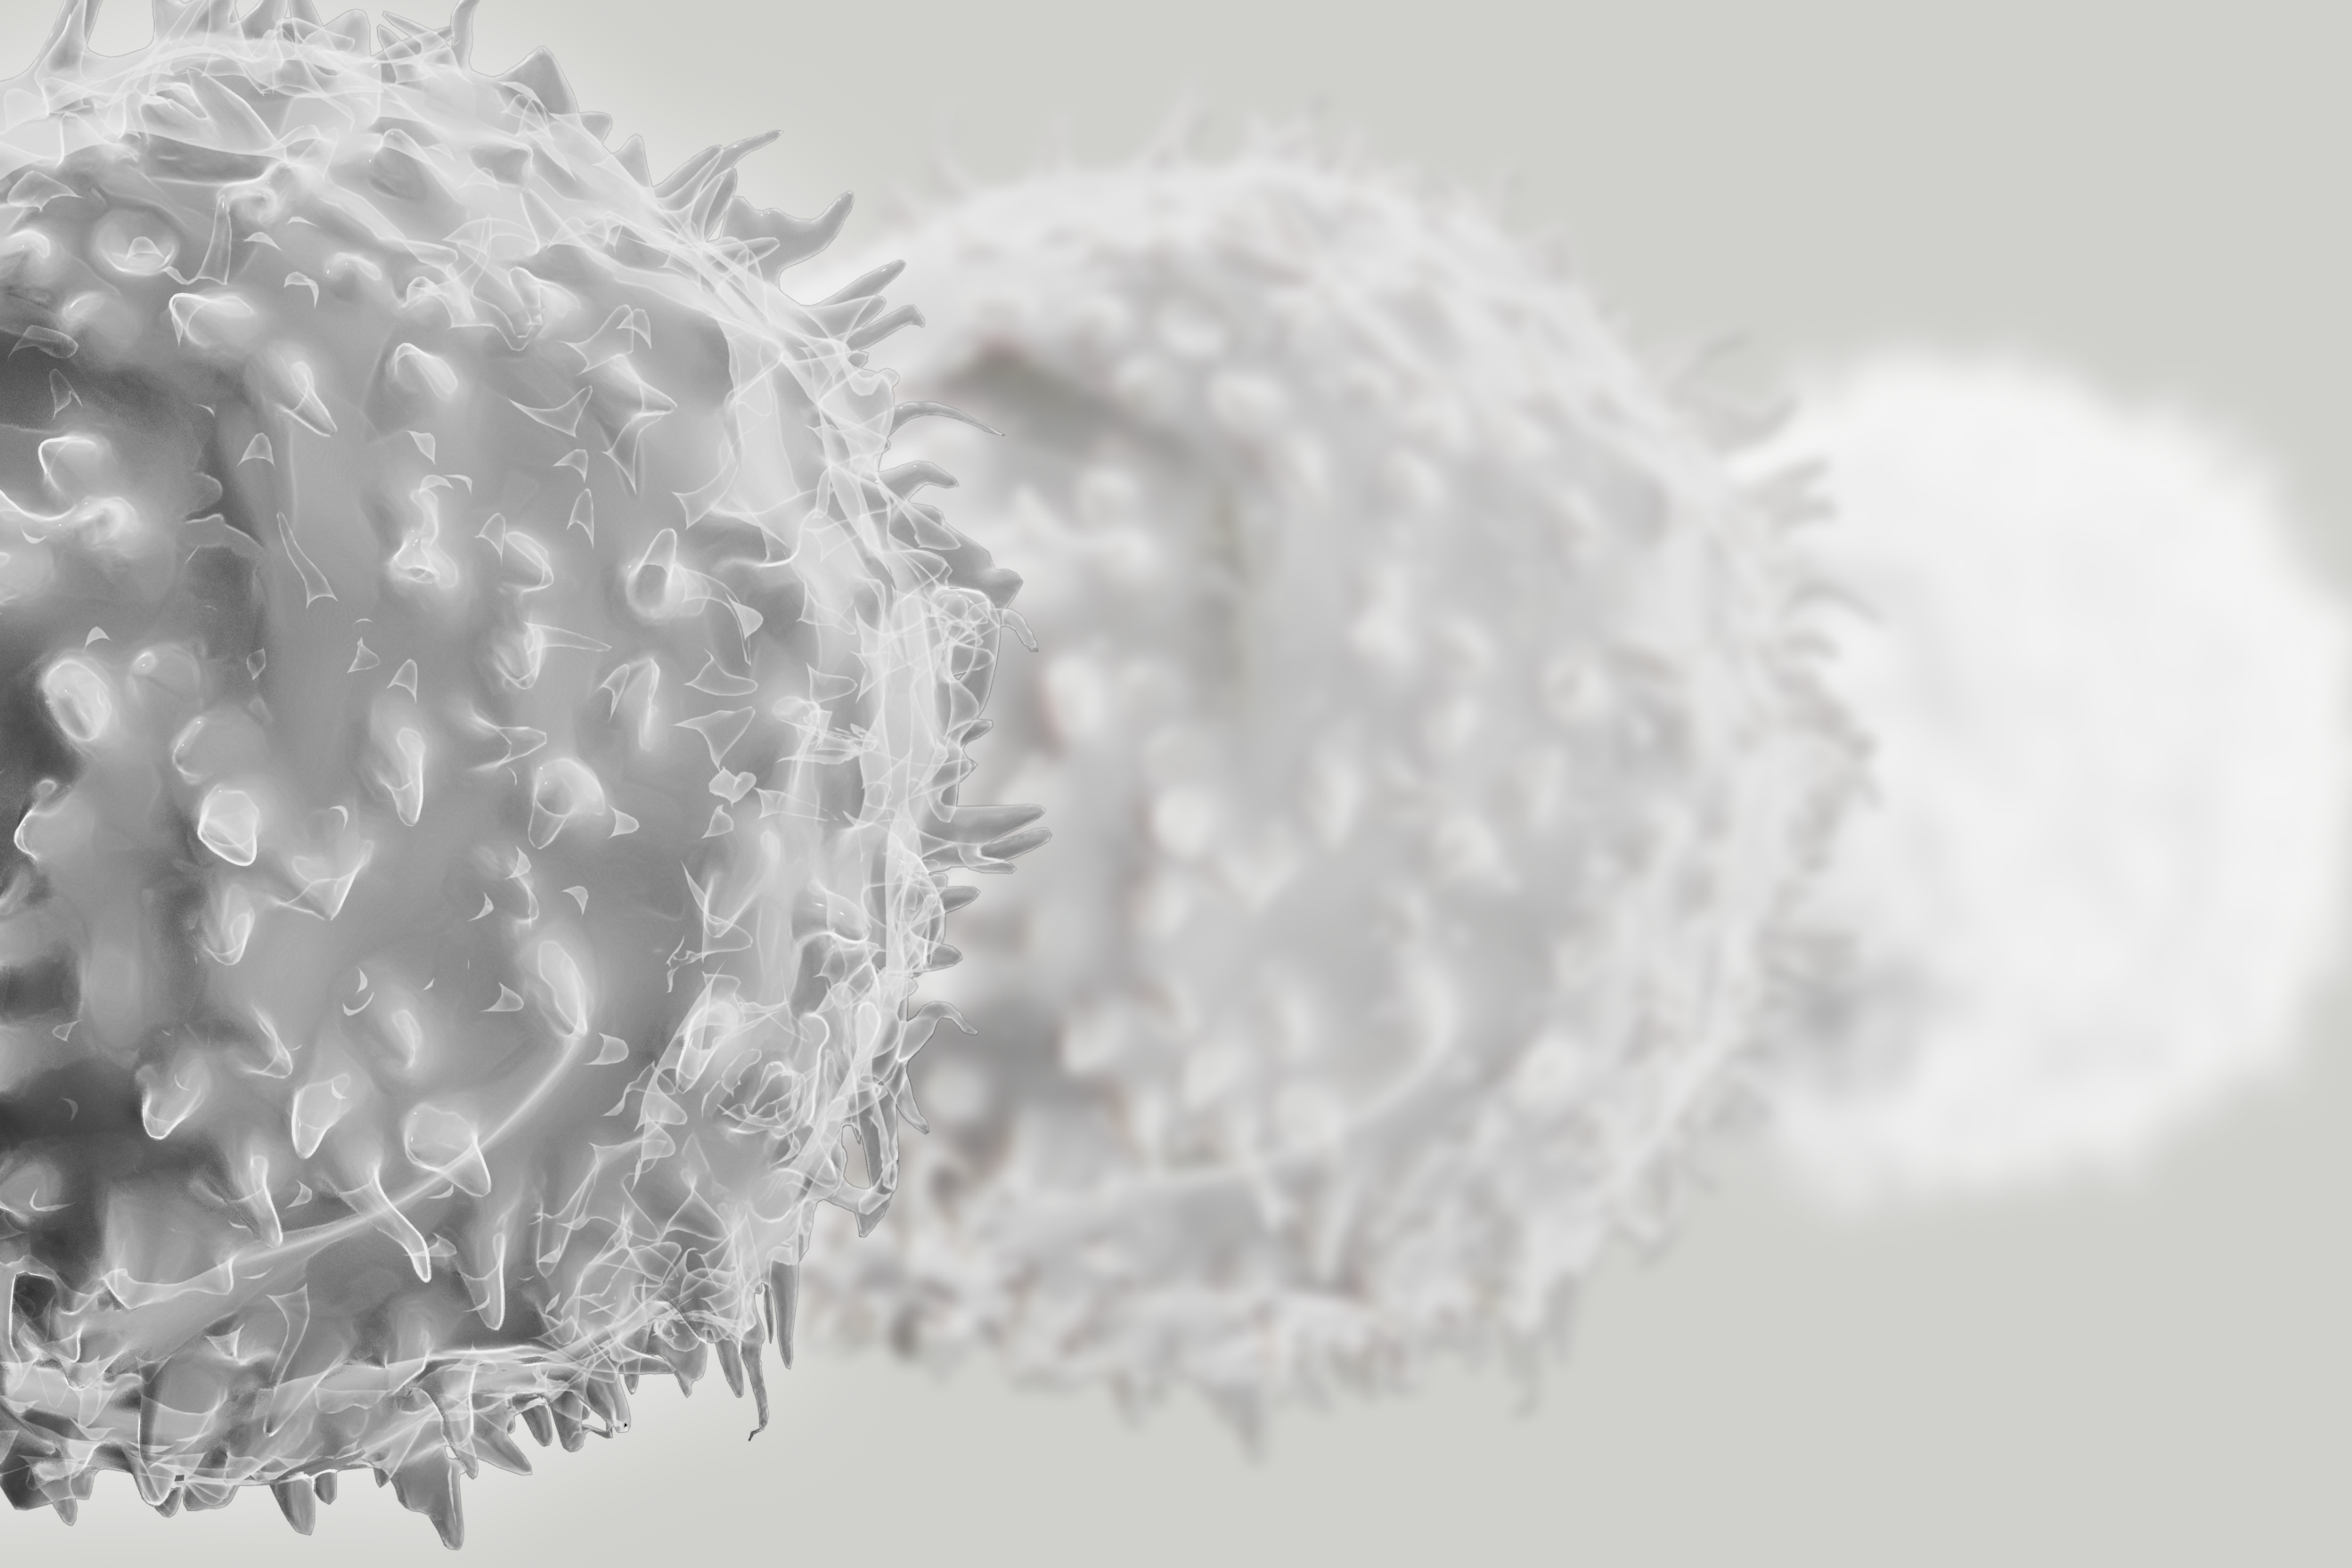 T-Cells symbolizing inmune aging